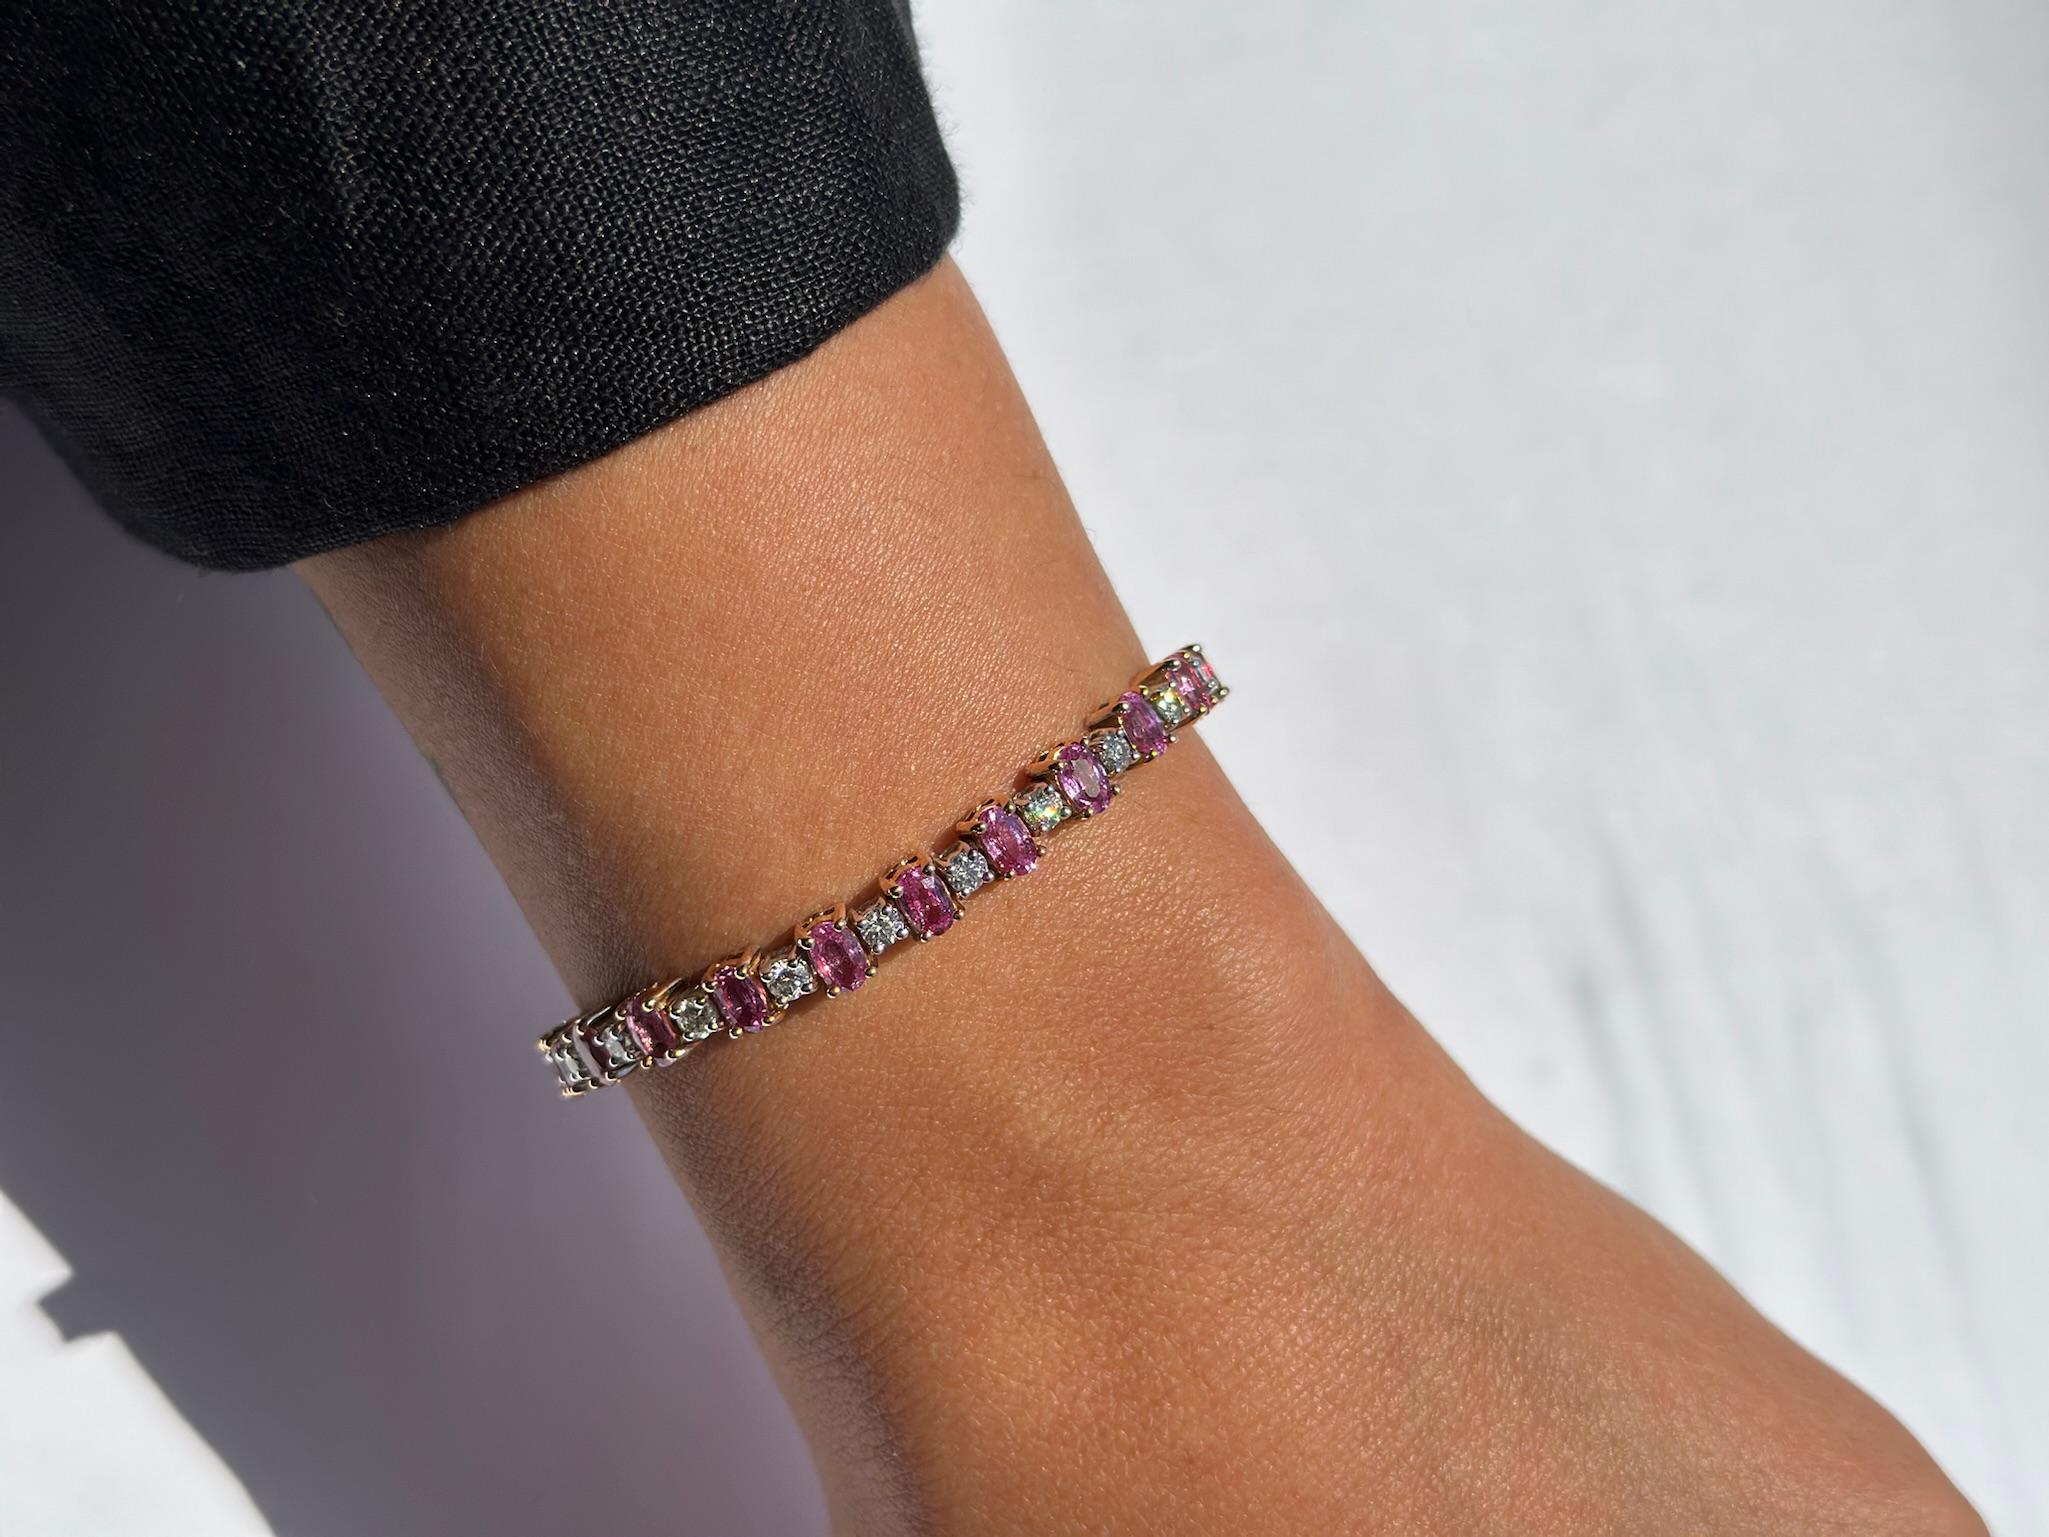 Unser exquisites Tennisarmband mit rosa Saphiren und Diamanten ist eine wahre Verkörperung von Luxus und Raffinesse. Dieses atemberaubende Schmuckstück kombiniert die zeitlose Eleganz von 18-karätigem Weiß- und Gelbgold mit dem Glanz von Diamanten